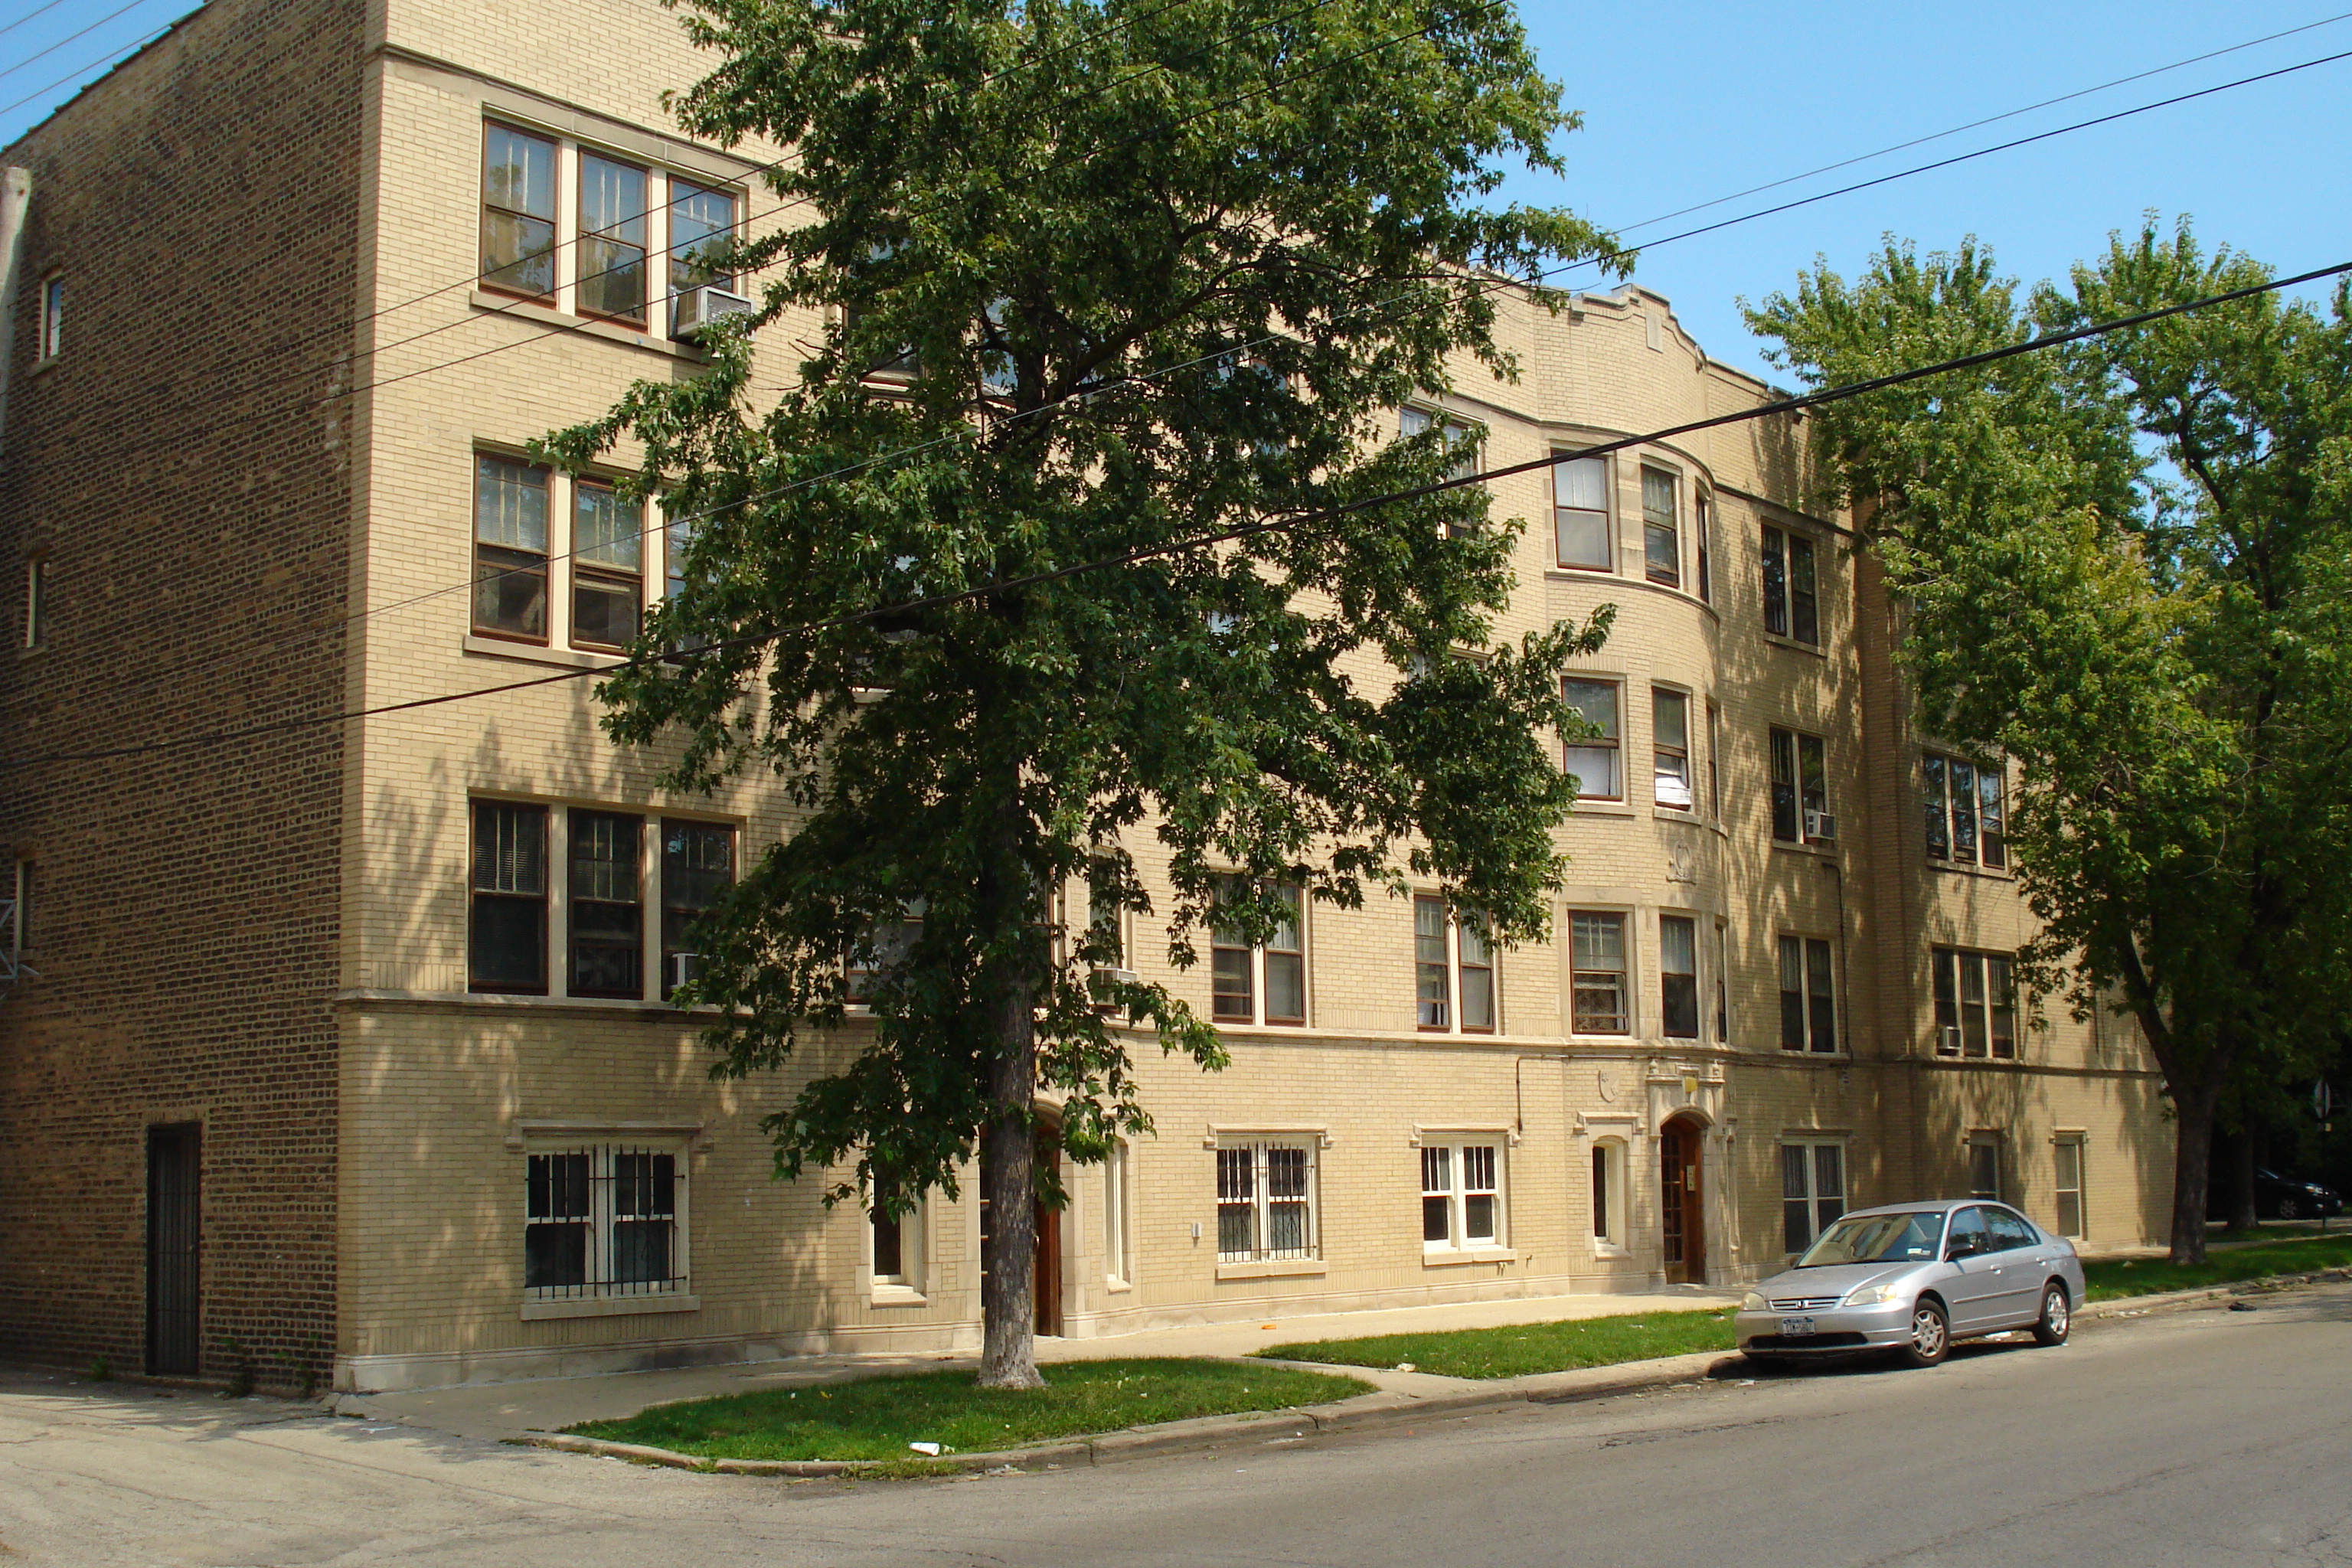 17 Unit Apartment Building in Chicago